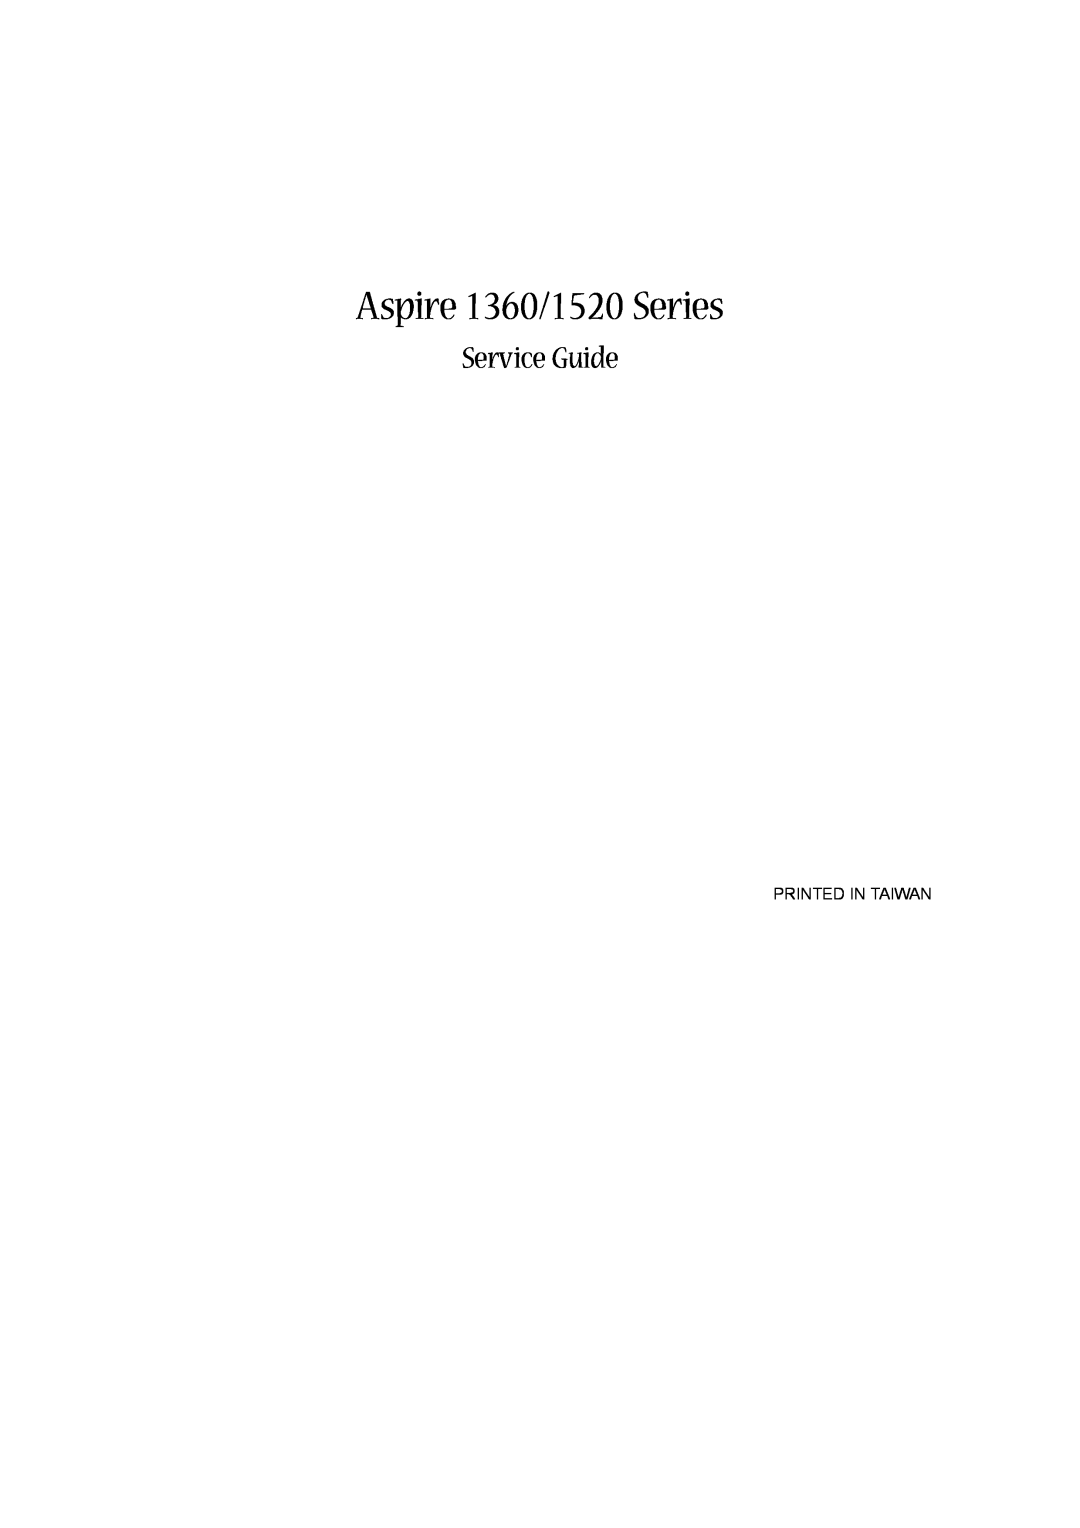 Aspire Digital manual Aspire 1360/1520 Series, Service Guide 